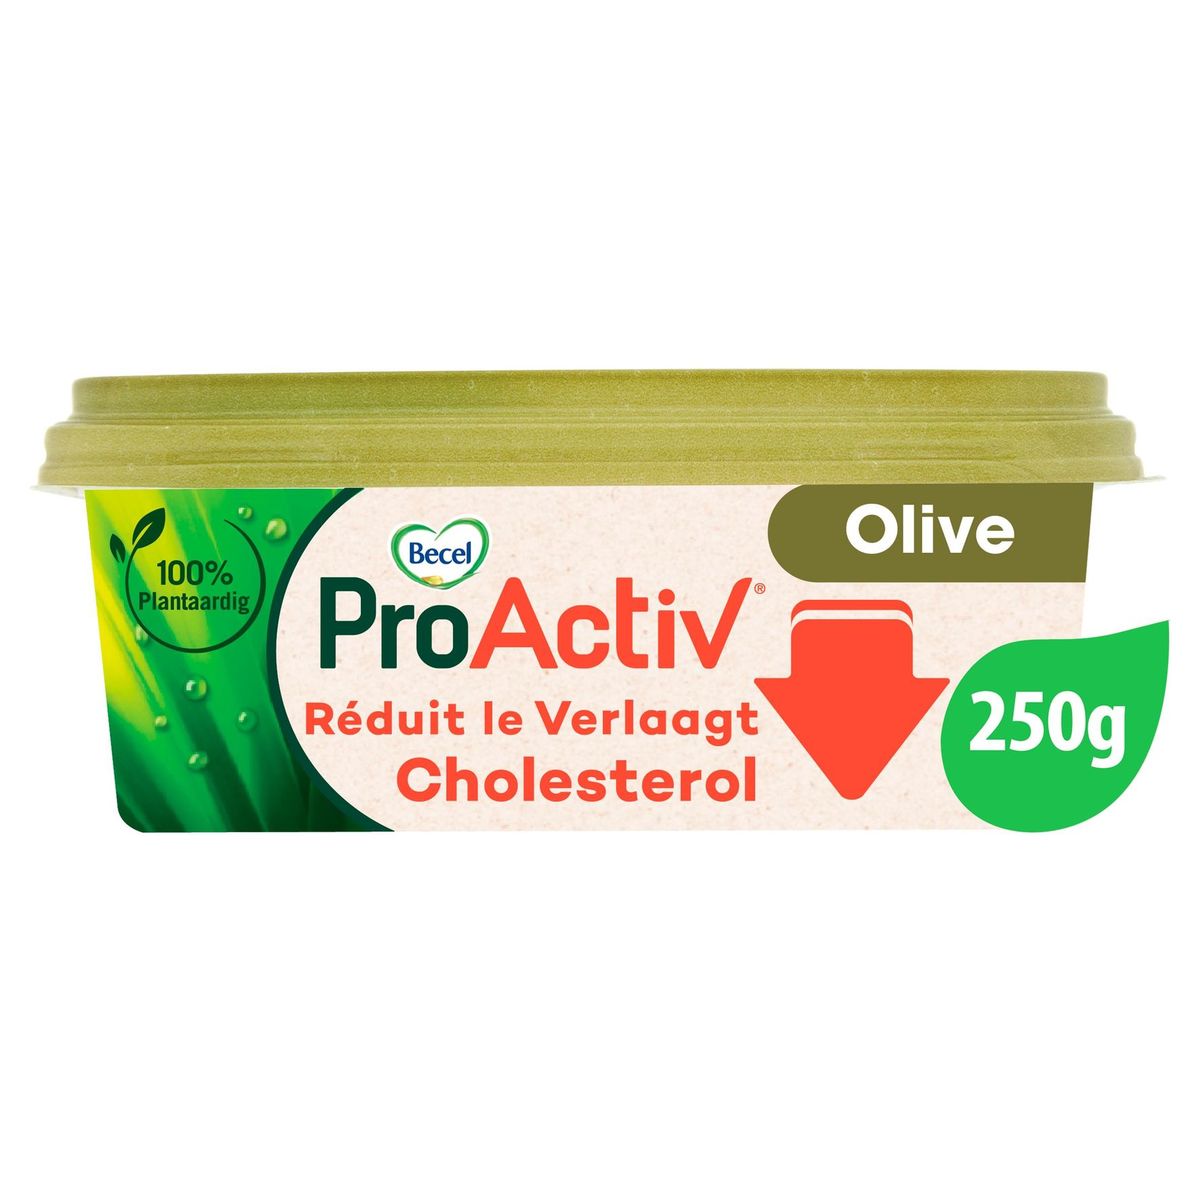 ProActiv | Verlaagt cholesterol | met Olijfolie | 250g